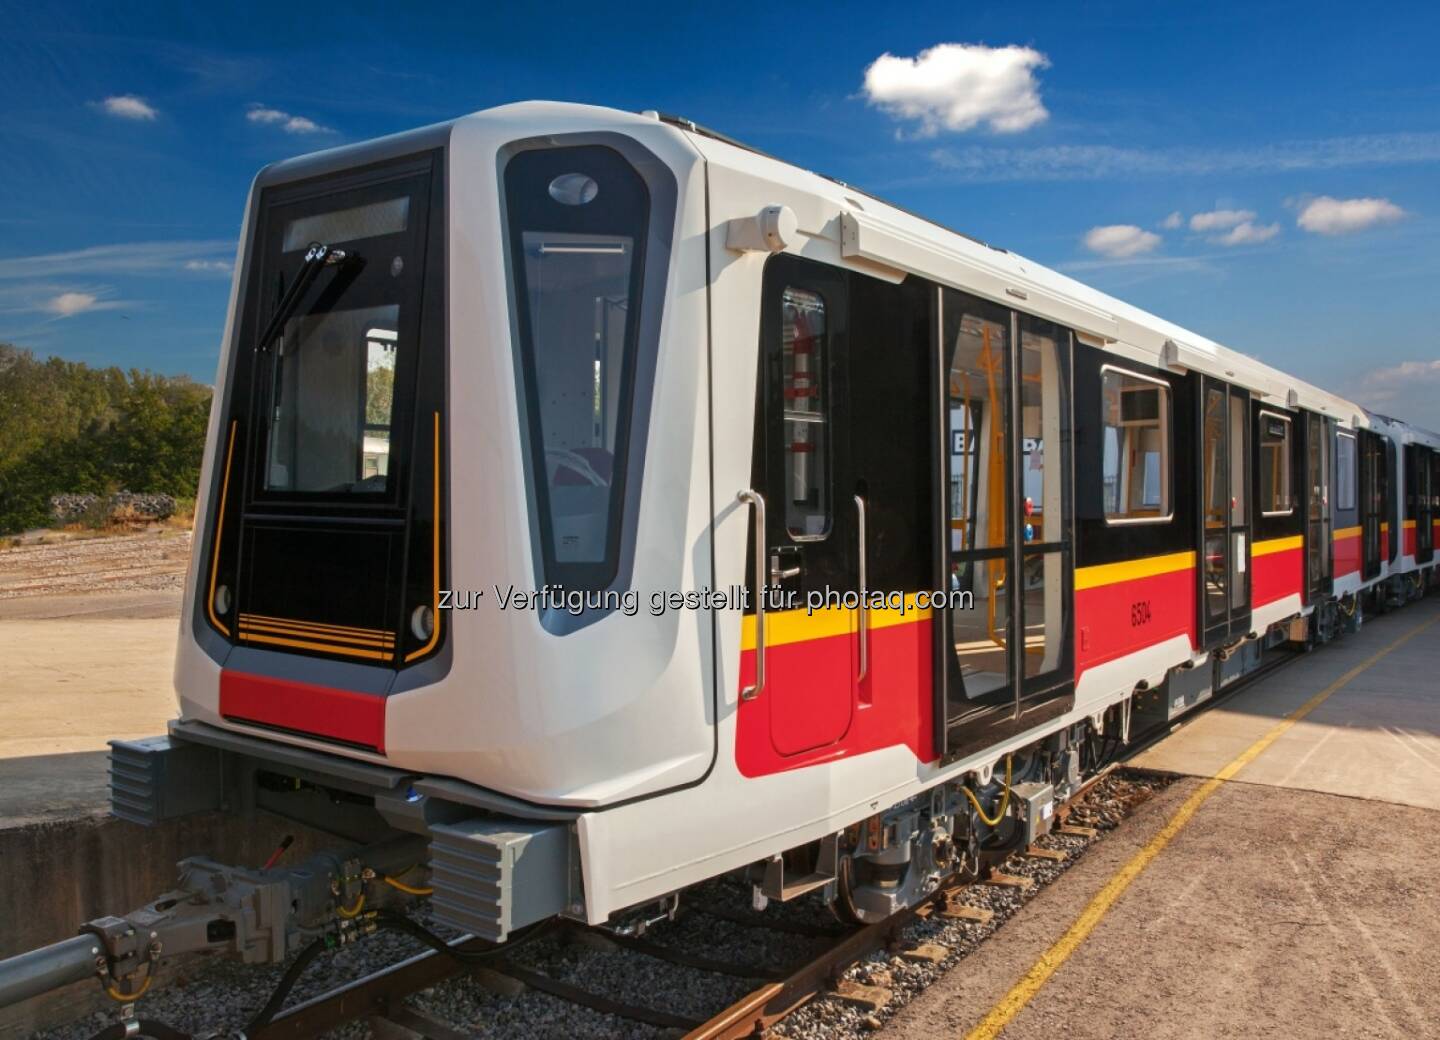 Die von Siemens und DesignworksUSA, einem Tochterunternehmen der BMW Group, entwickelte Metro-Plattform Inspiro erhielt in Berlin den Bundespreis Ecodesign in der Kategorie Produkte (Bild: Siemens)